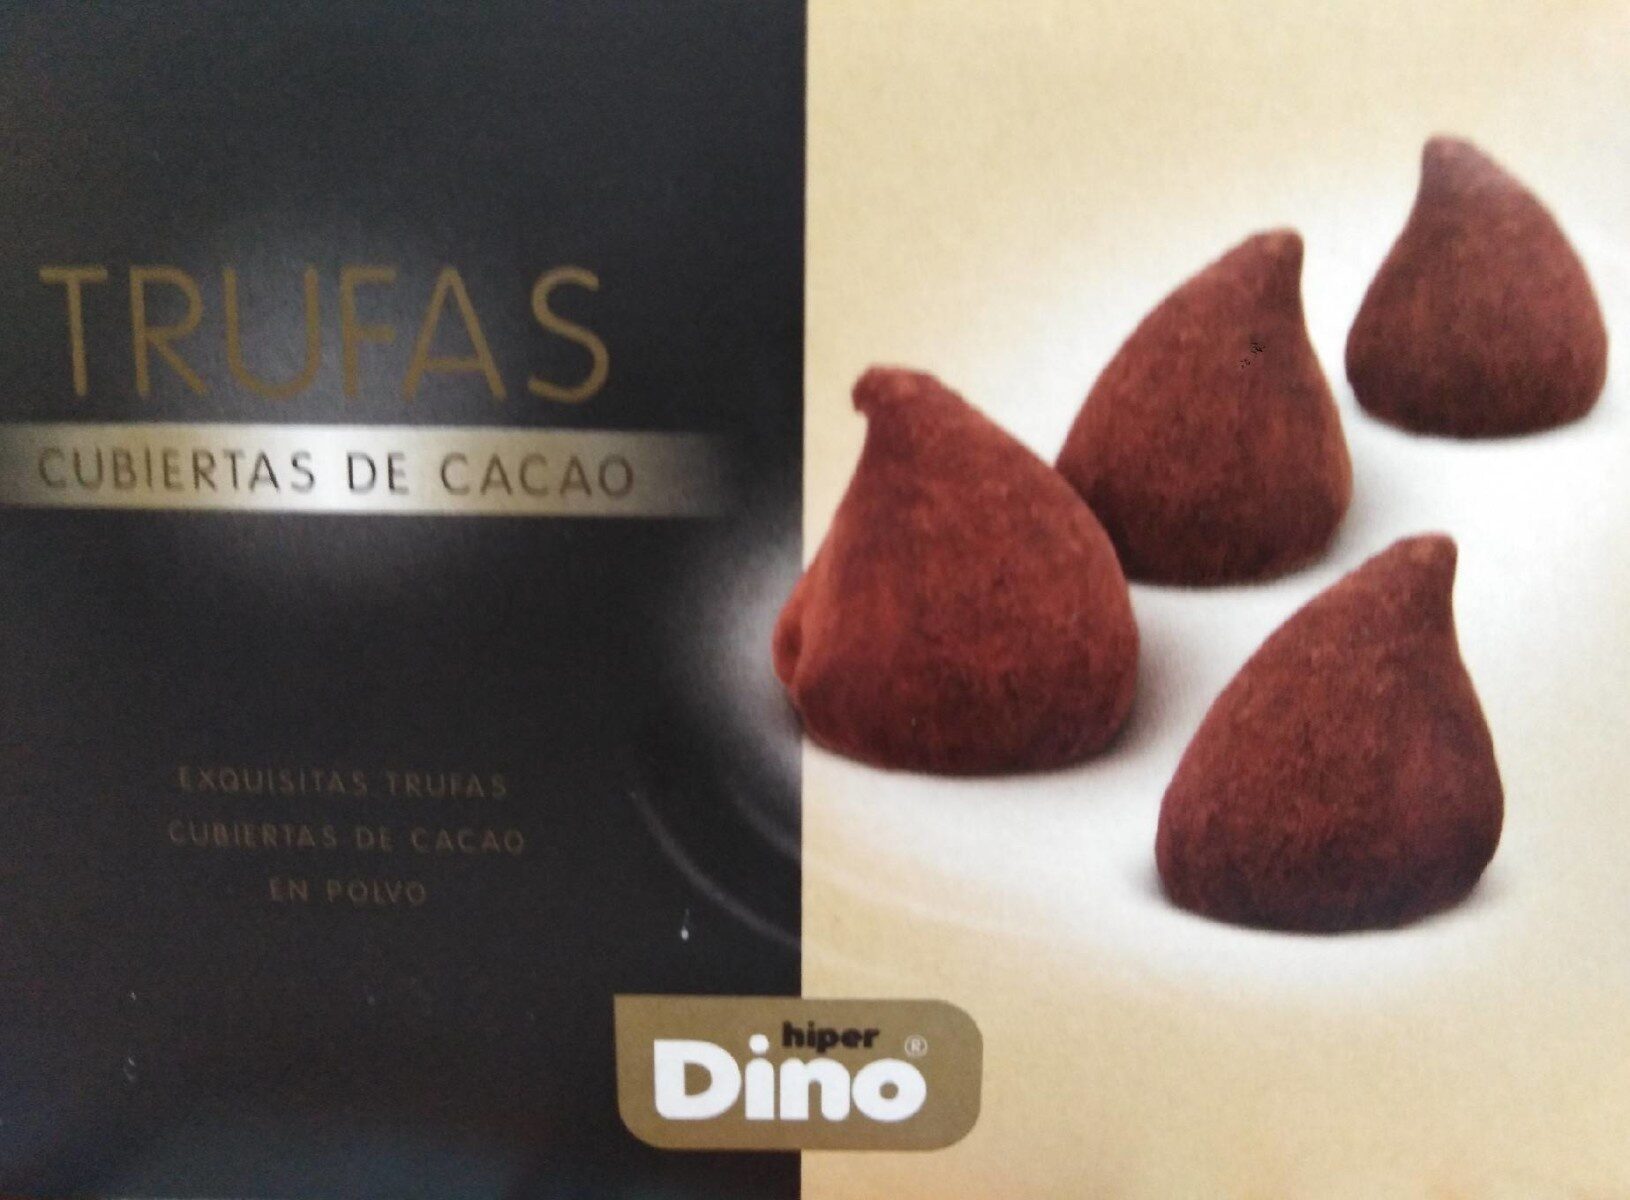 Trufas cubiertas de cacao - Producte - es